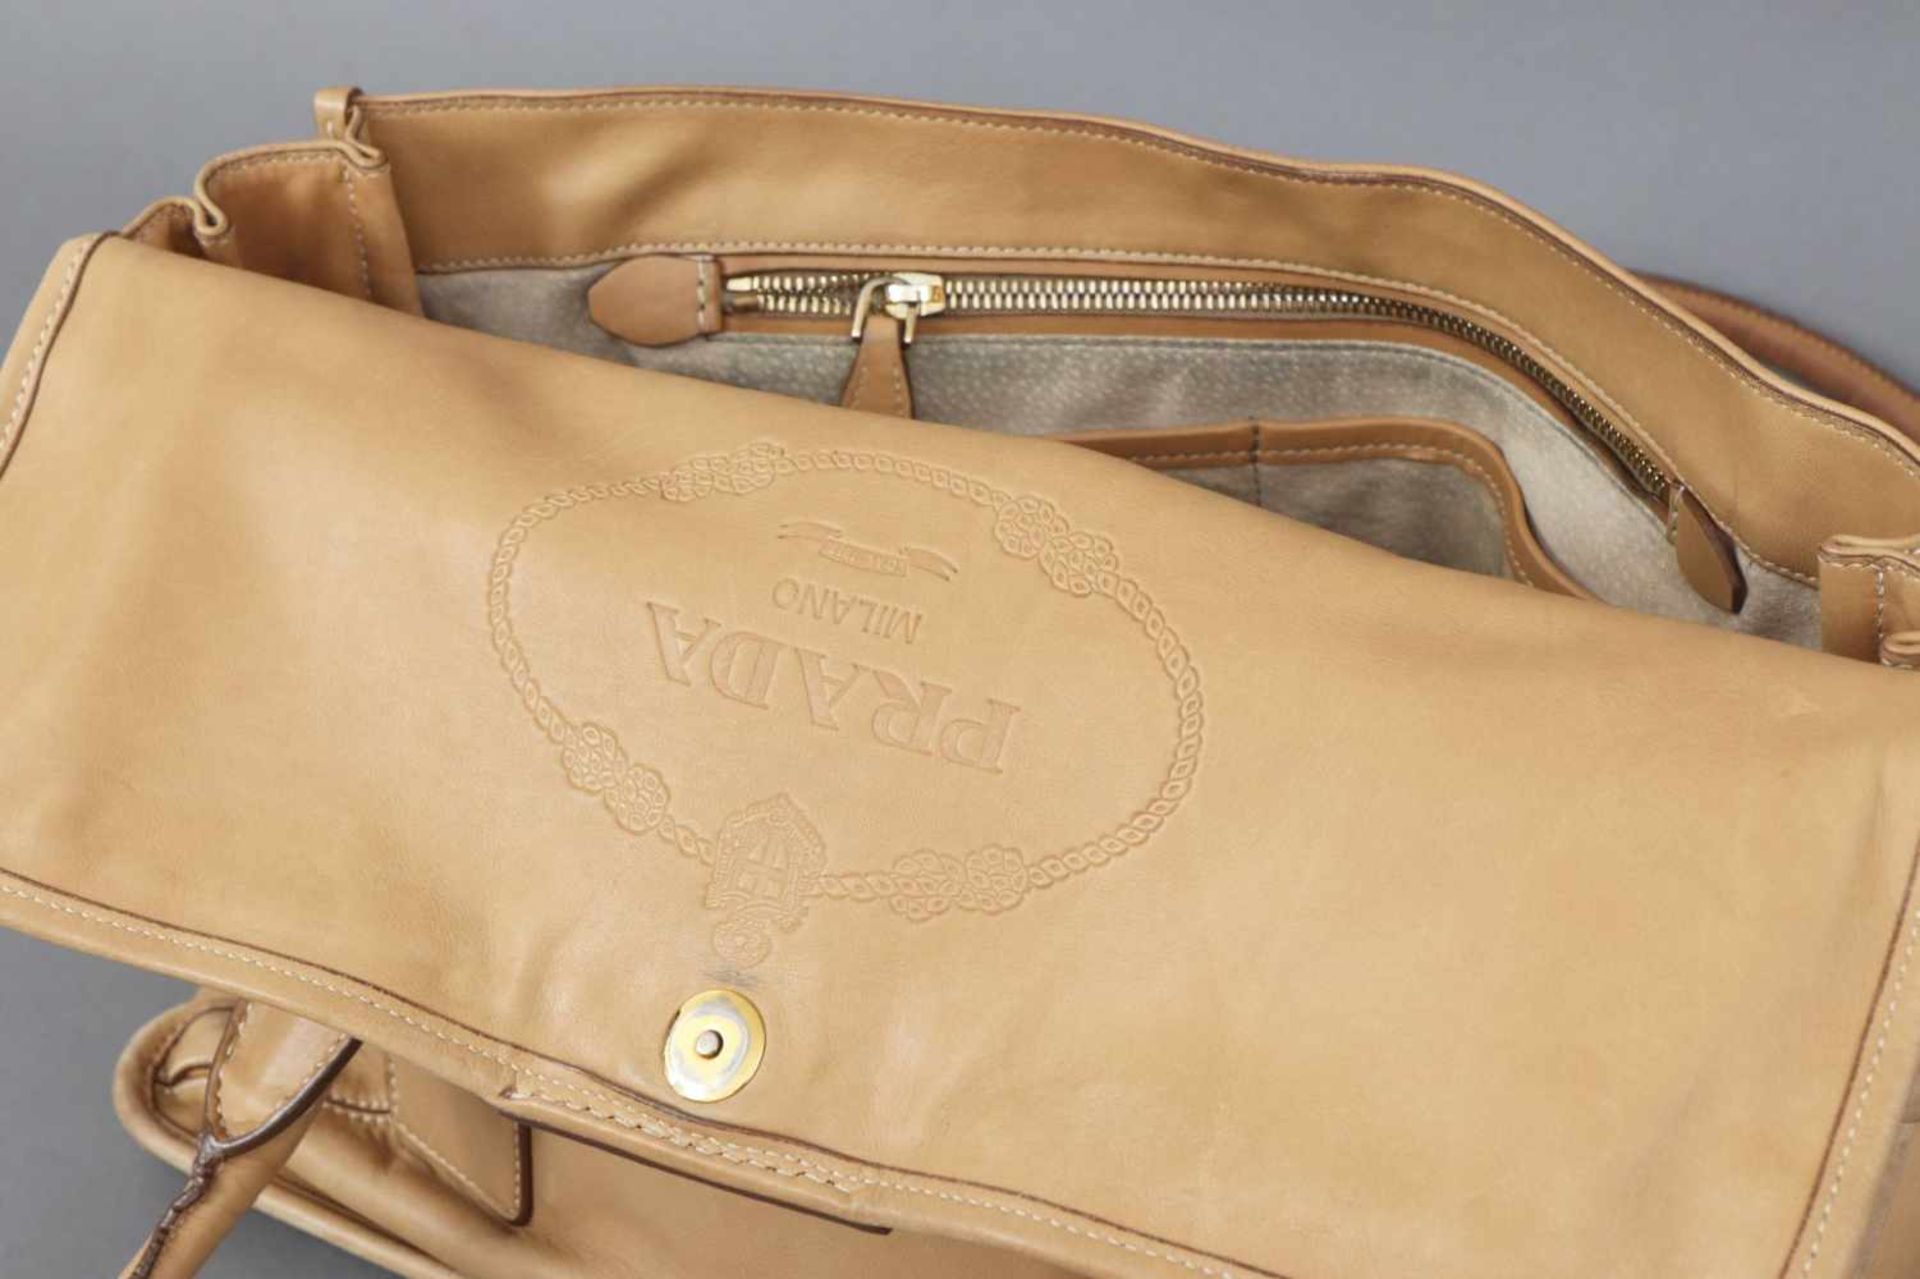 PRADA Handtasche hellbeiges Leder, Kuvertform, 2 Trageriemen, vergoldeter Prada-Schriftzug auf der - Bild 4 aus 4